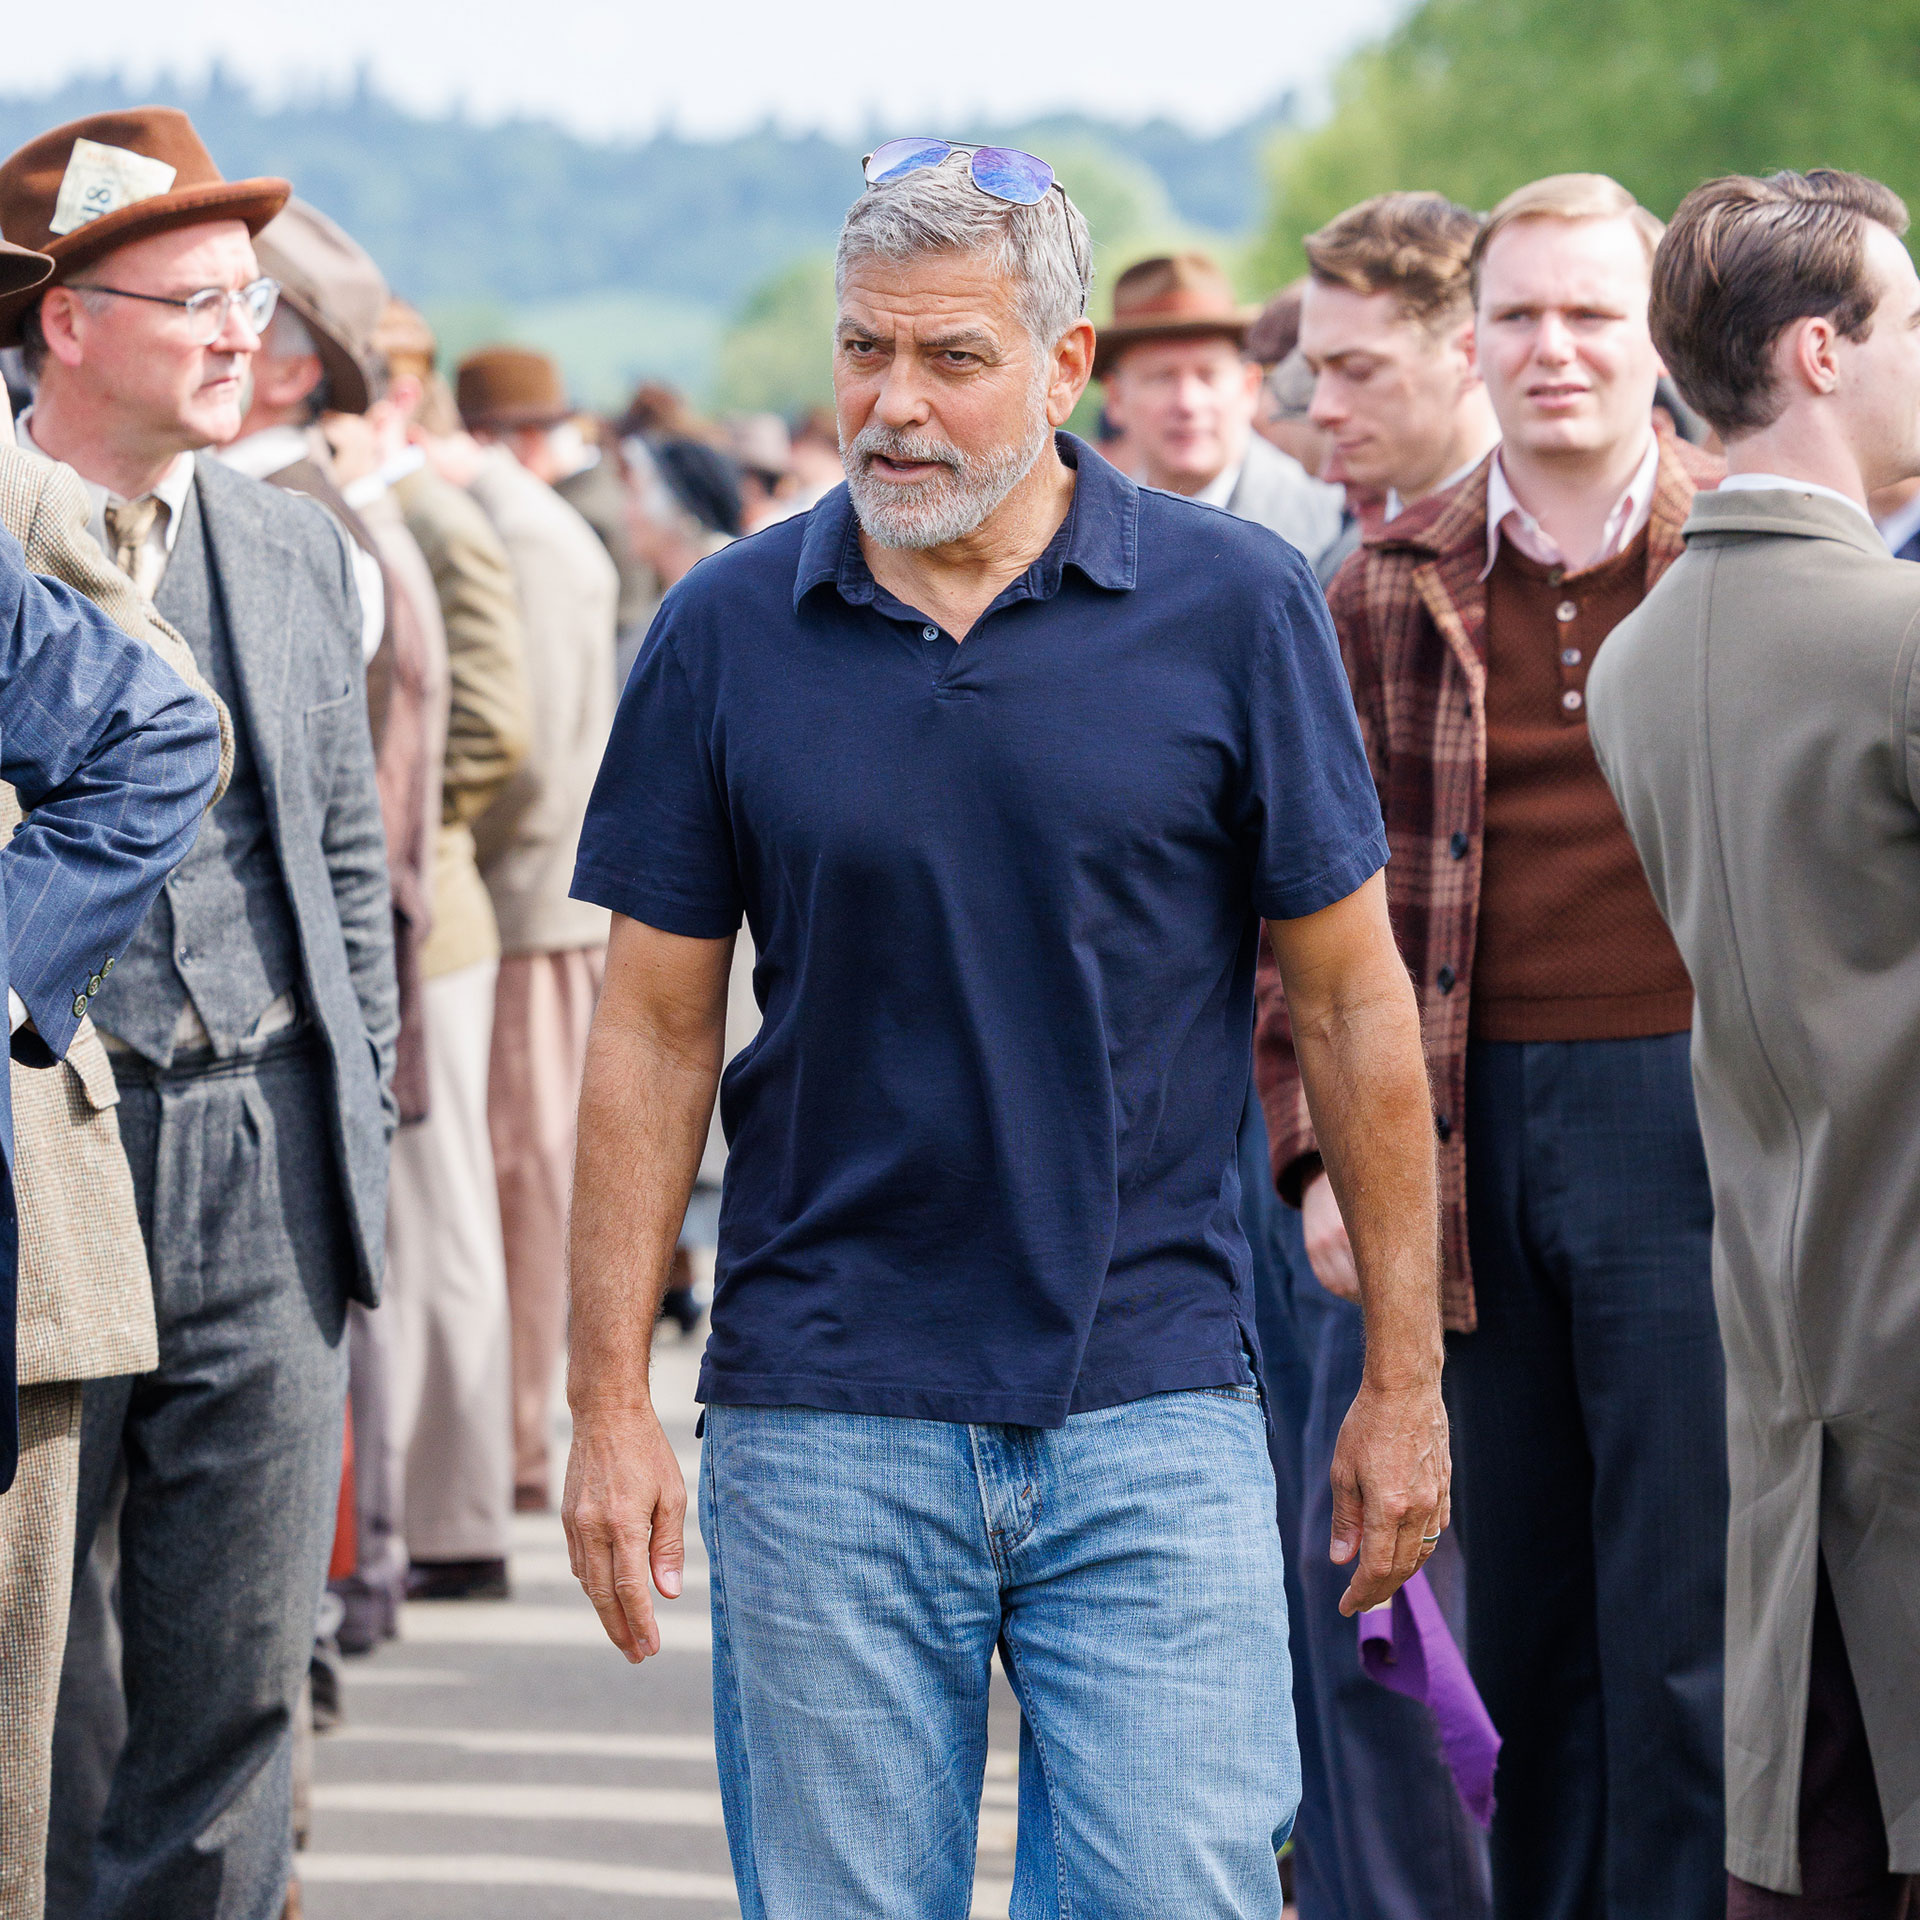 Día de trabajo. George Clooney trabaja en la dirección de su nueva película "The Boys in the Boat", protagonizada por Callum Turner. El artista fue fotografiado mientras caminaba y daba indicaciones a los actores en pleno rodaje (Fotos: The Grosby Group)